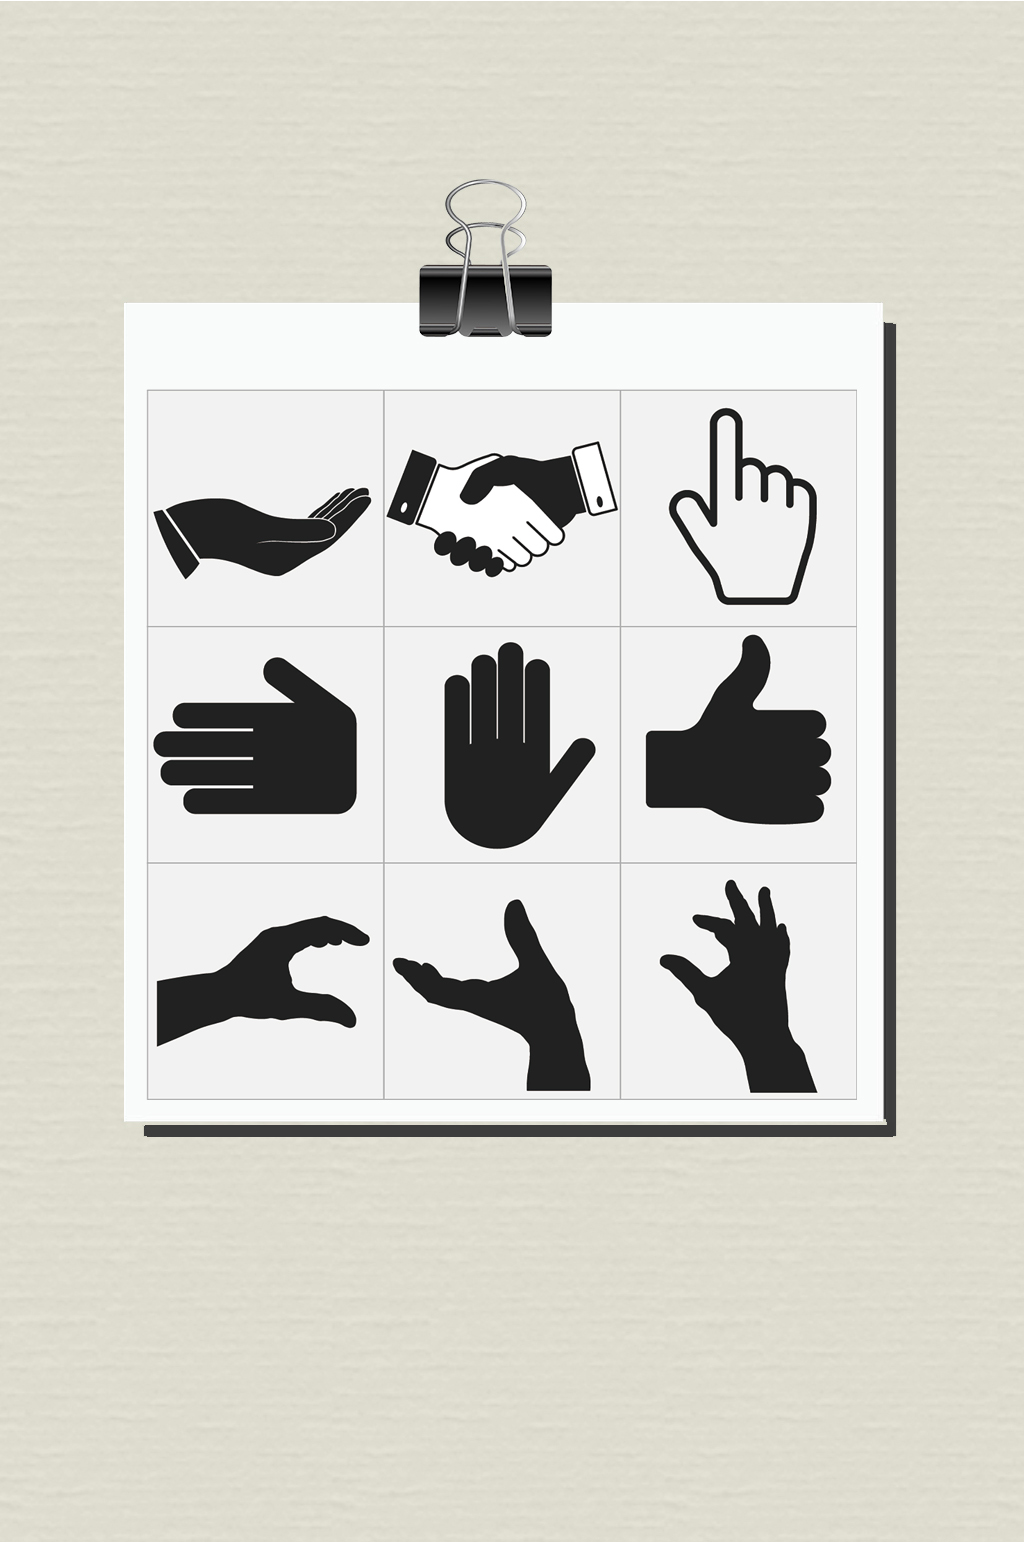 国际手势符号图片